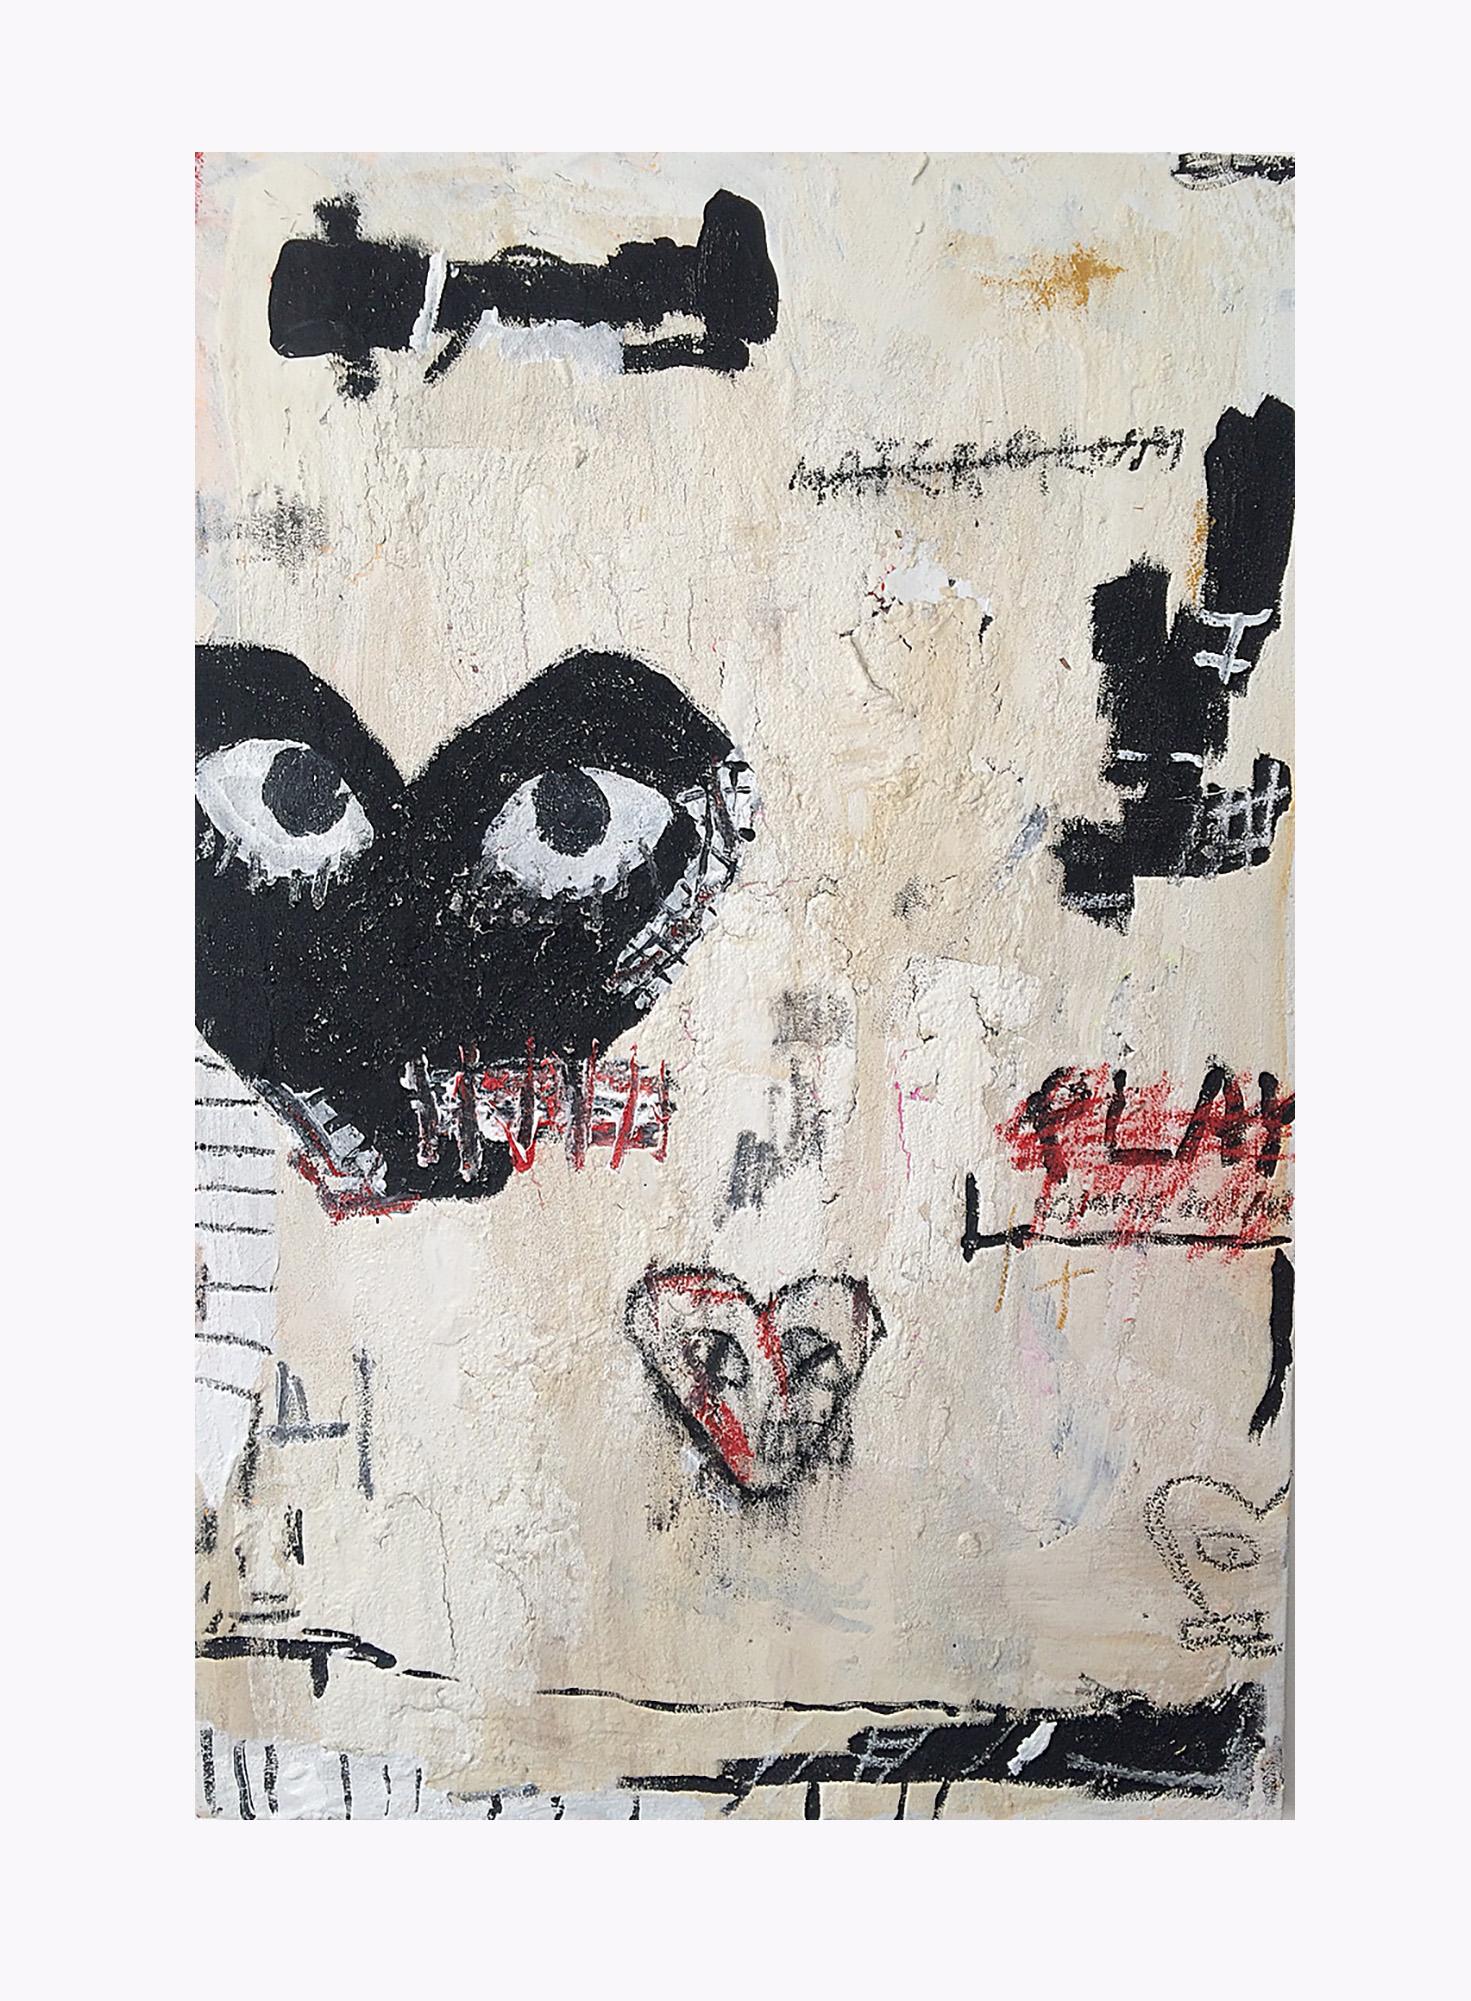 Ewan Keenan - Materialism pt.2 - Acrylic -  Millennial - Street Art - Basquiat - Conceptual Mixed Media Art by Unknown